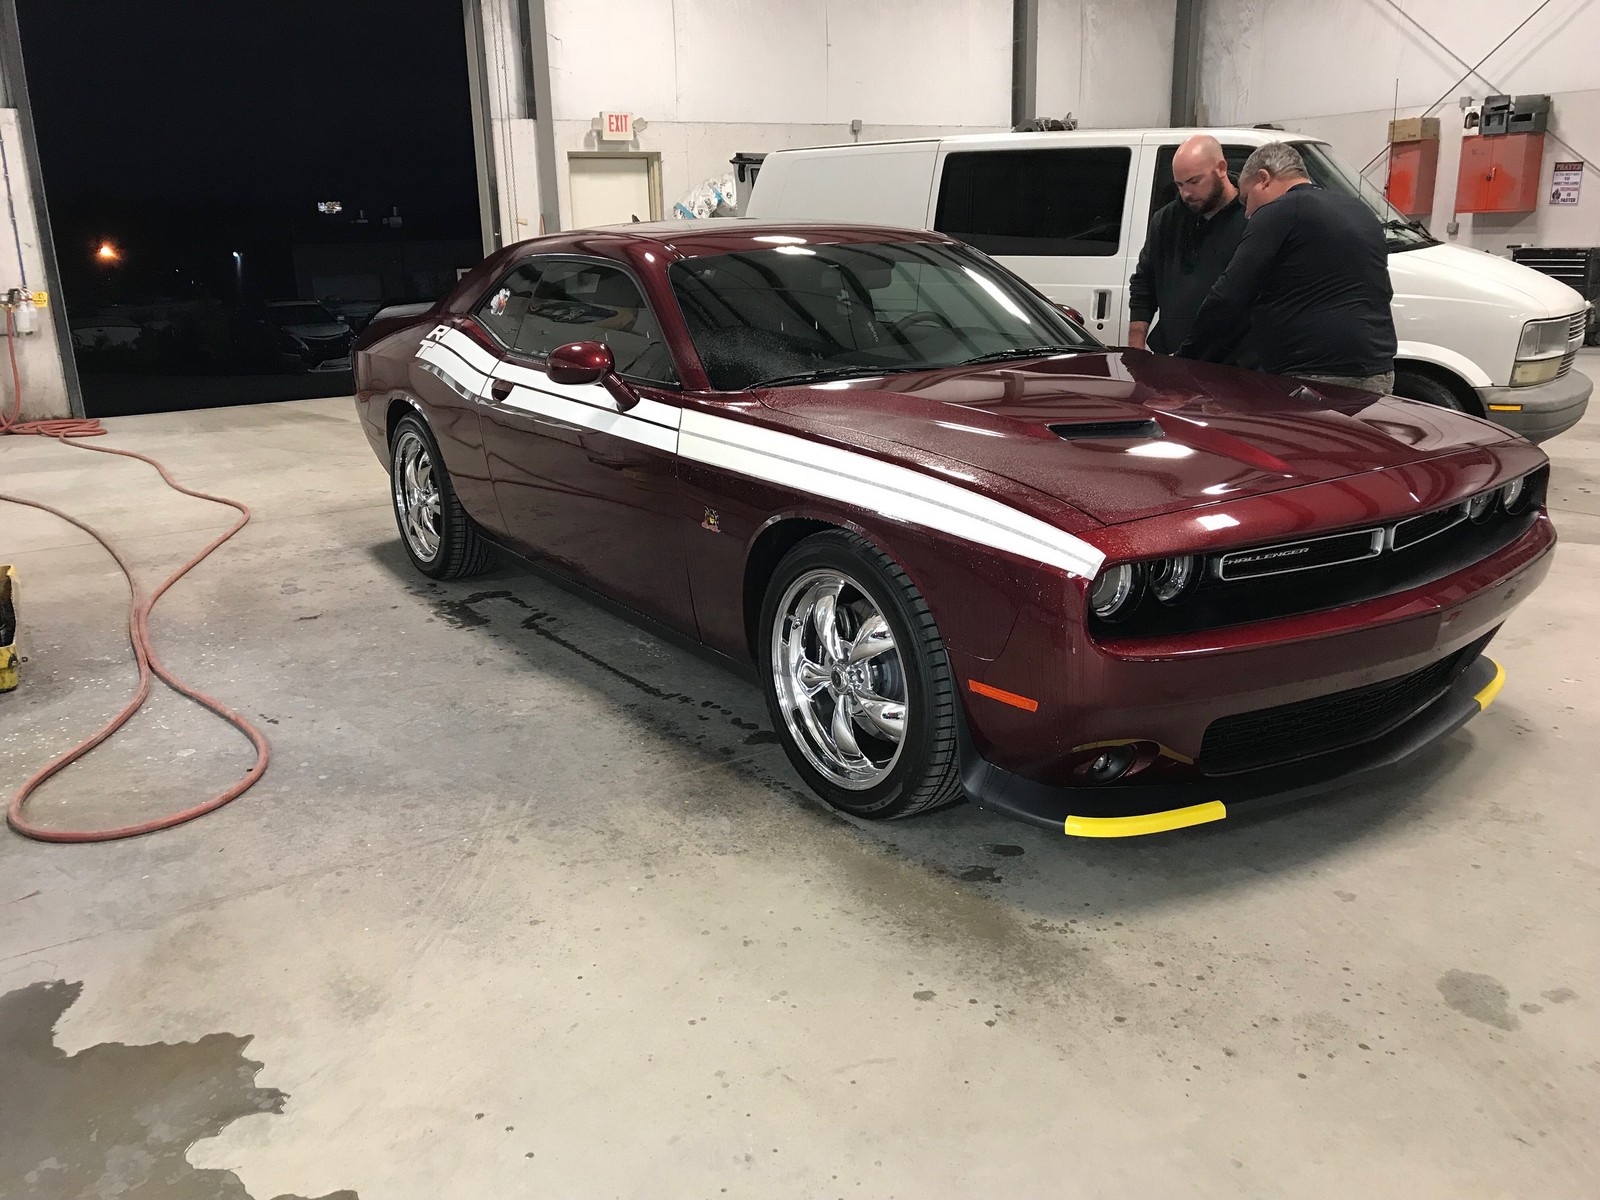 OCTANE RED PEARL 2018 Dodge Challenger SRT8 RT SCAT PACK 392 STOCK